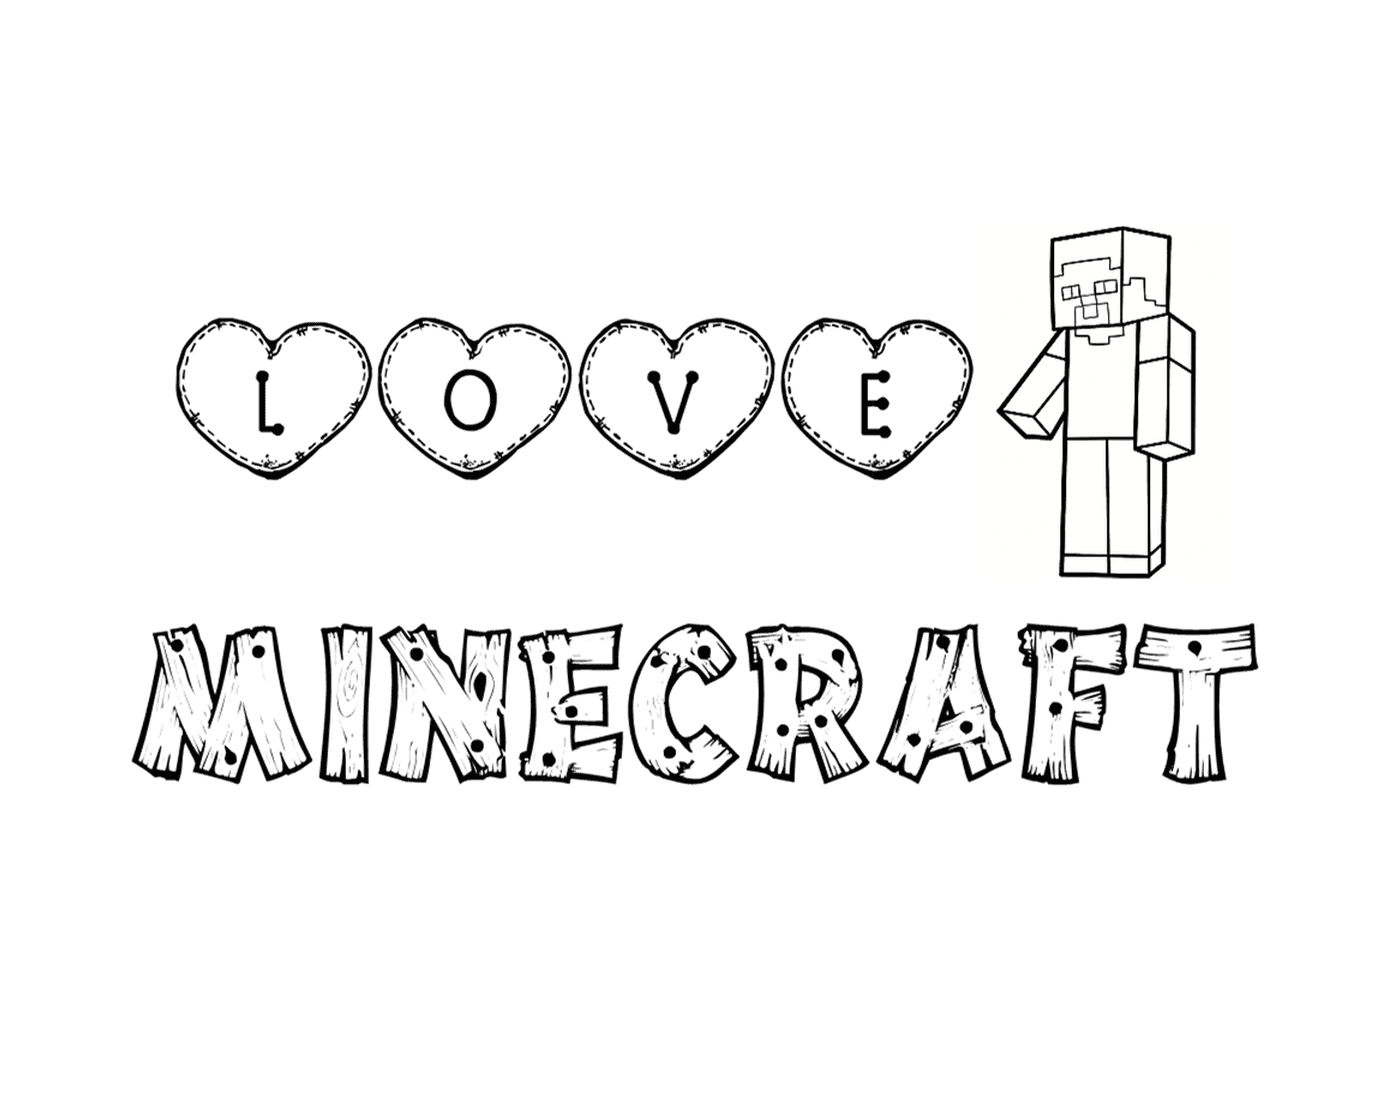  L'amore per Minecraft in lettere 